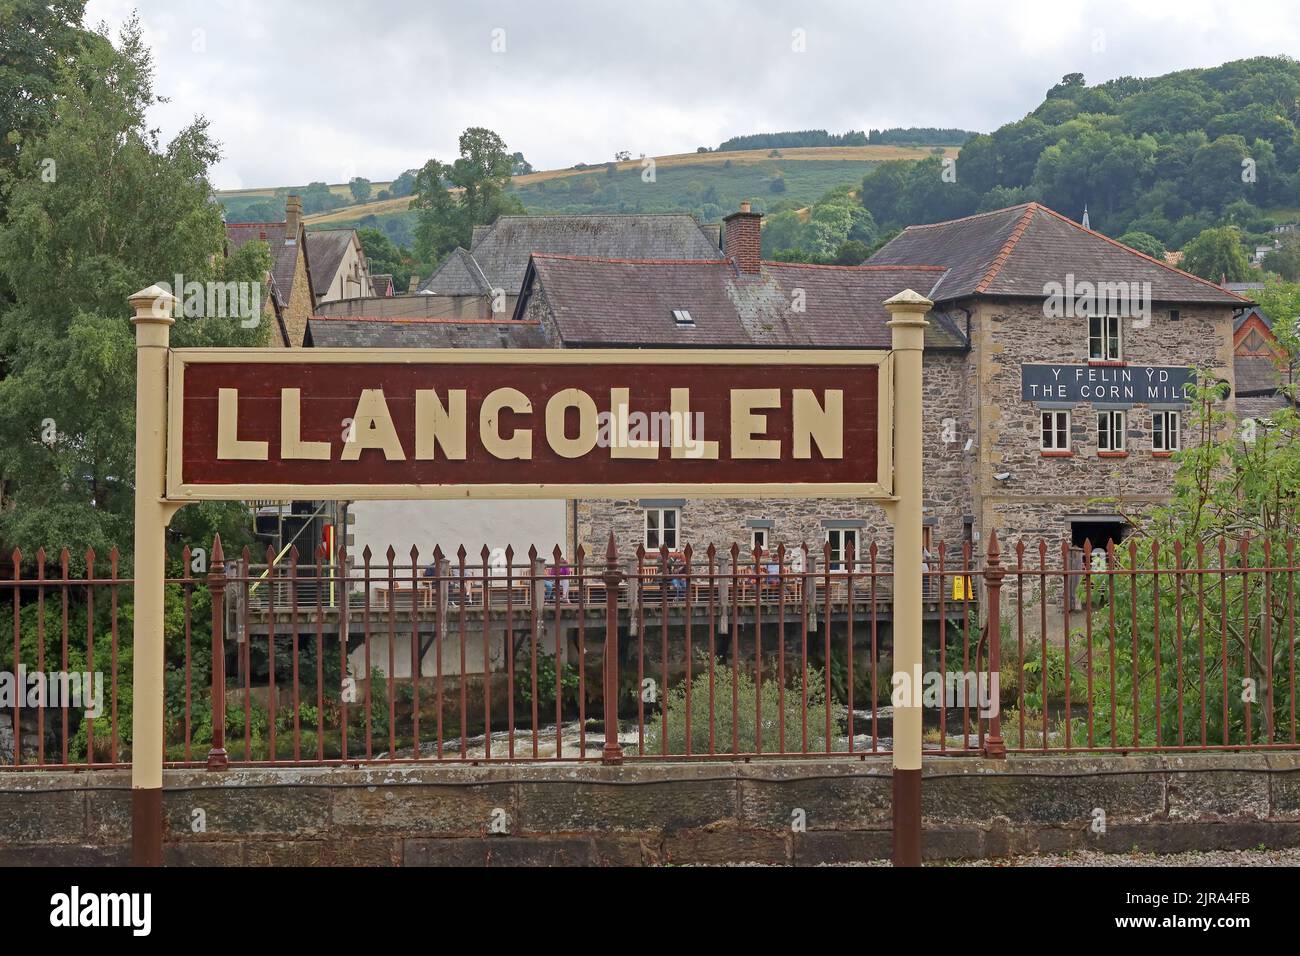 Panneau de la gare ferroviaire Llangollen Heritage sur la plate-forme, avec la rivière Dee en arrière-plan, Denbighshire, au nord du pays de Galles, Royaume-Uni Banque D'Images